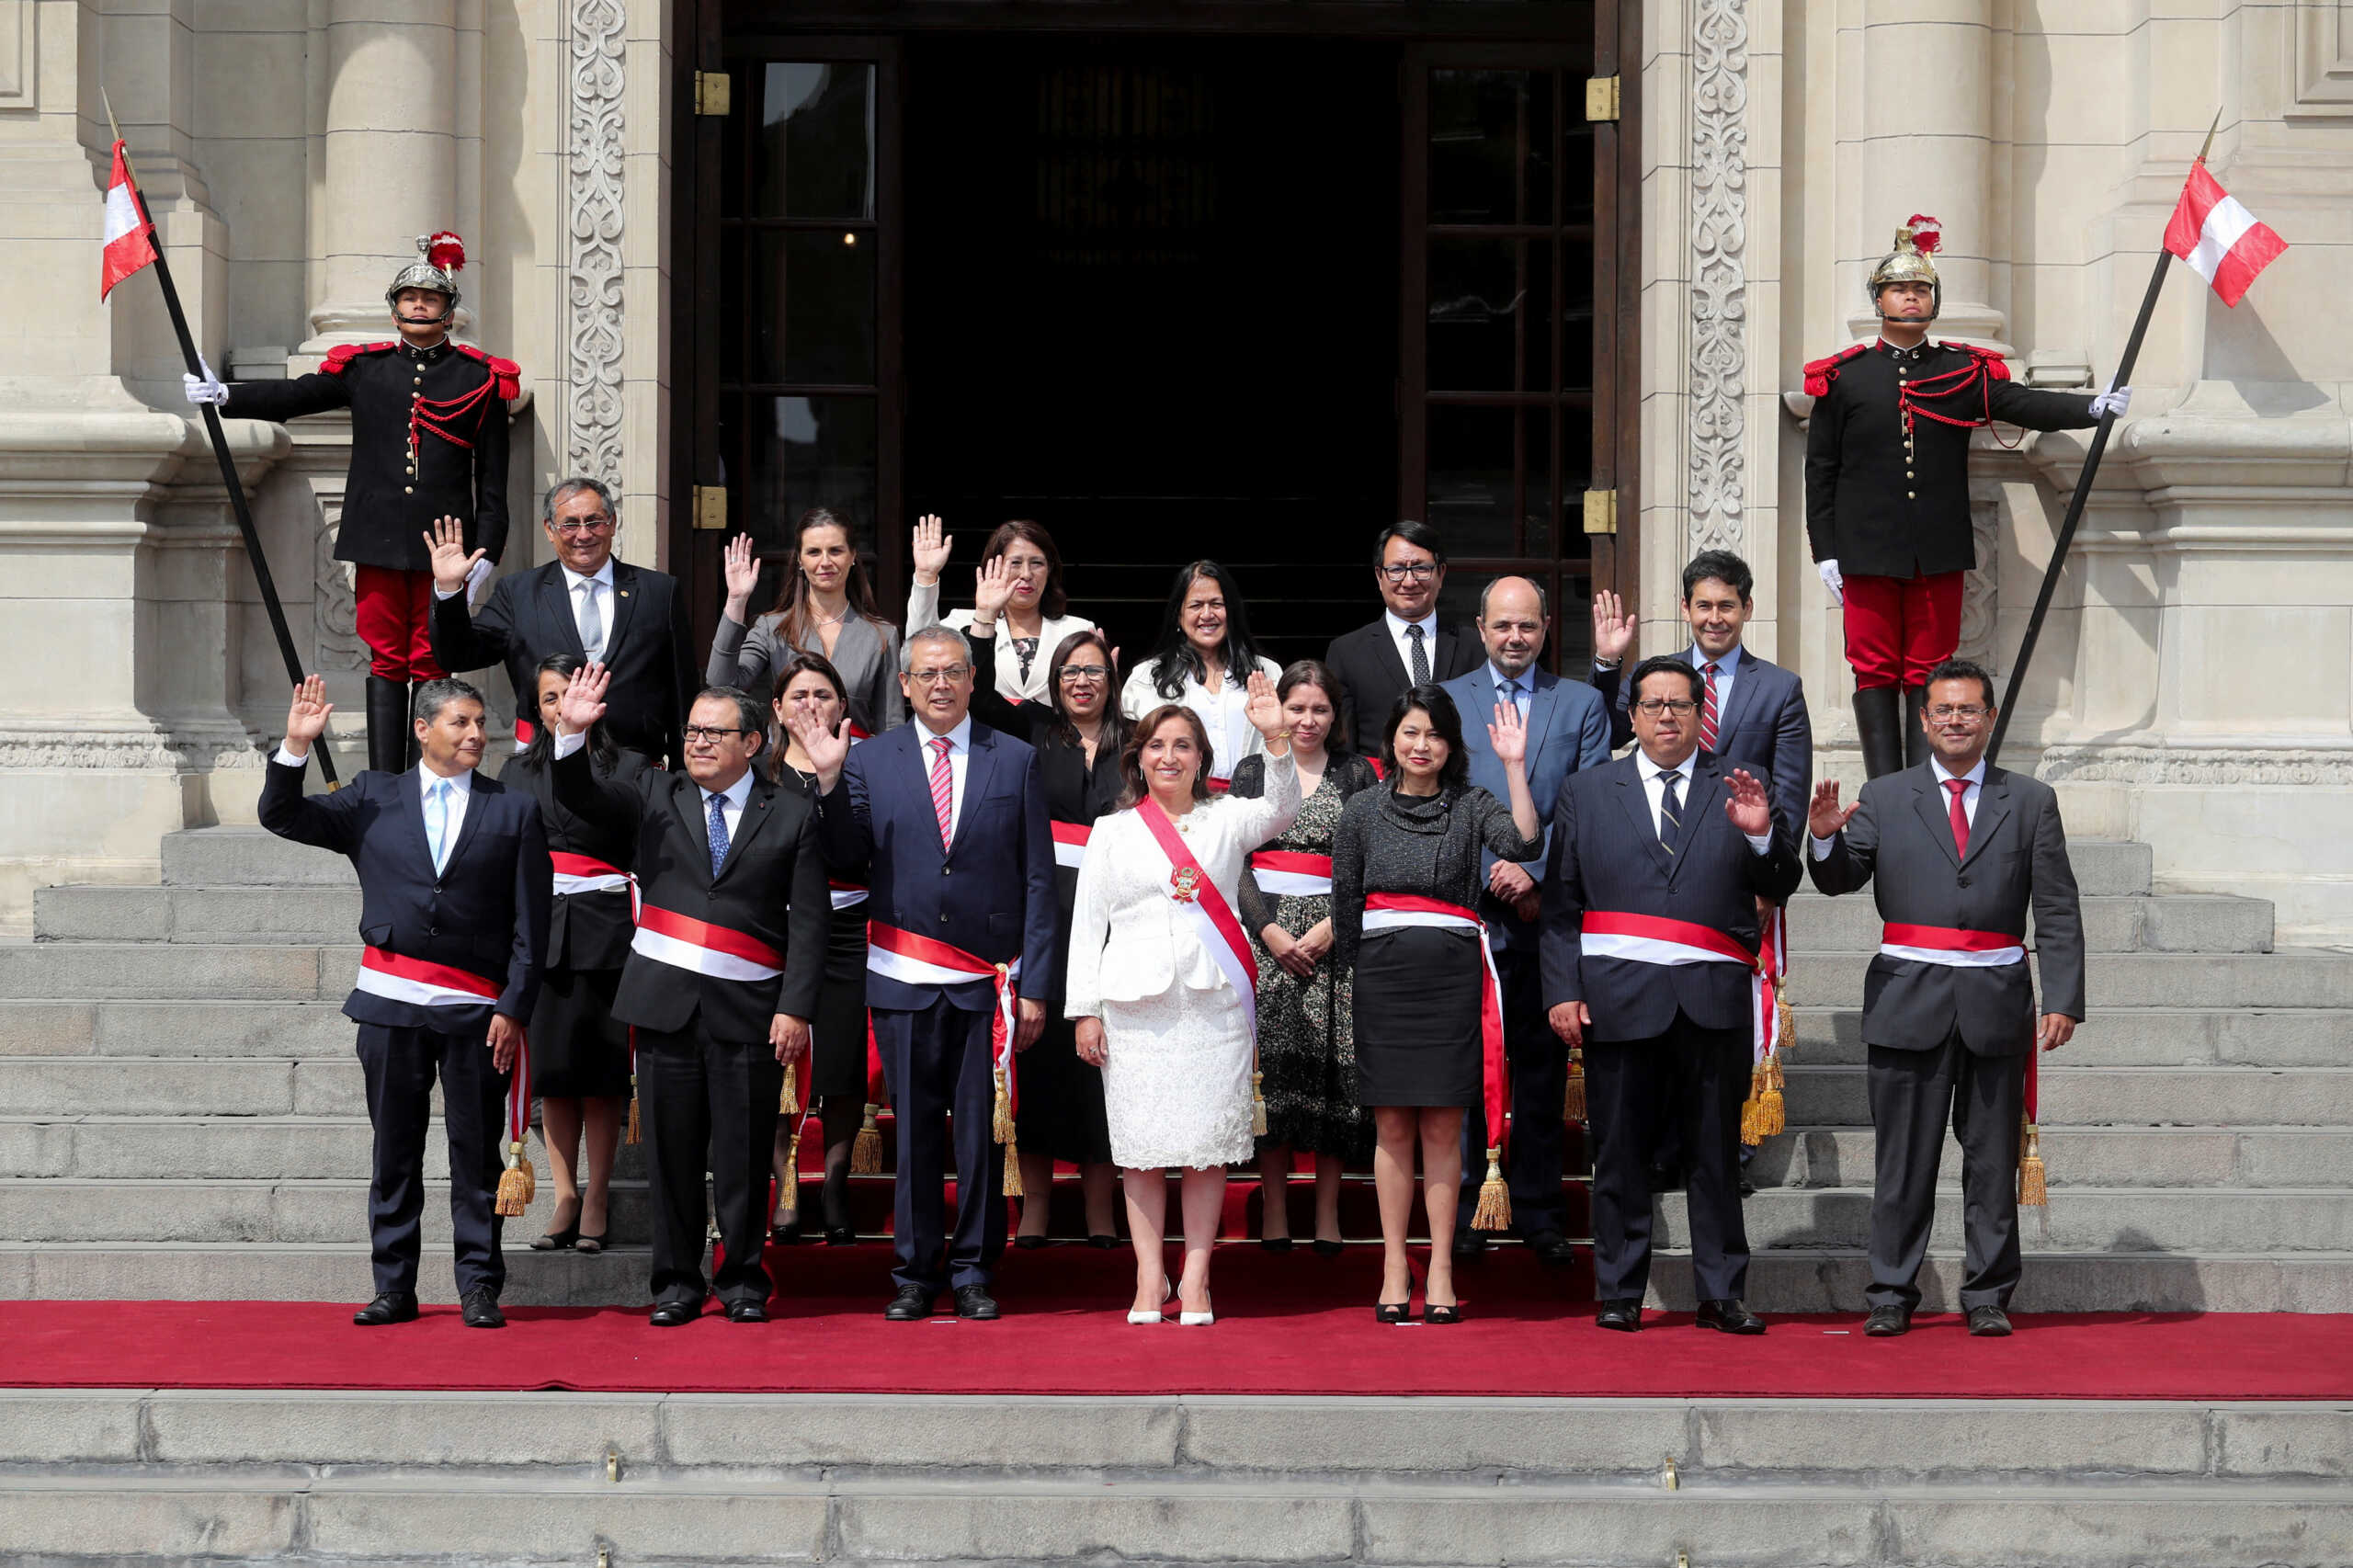 Περού: Η πρόεδρος Μπολουάρτε διόρισε νέο υπουργικό συμβούλιο